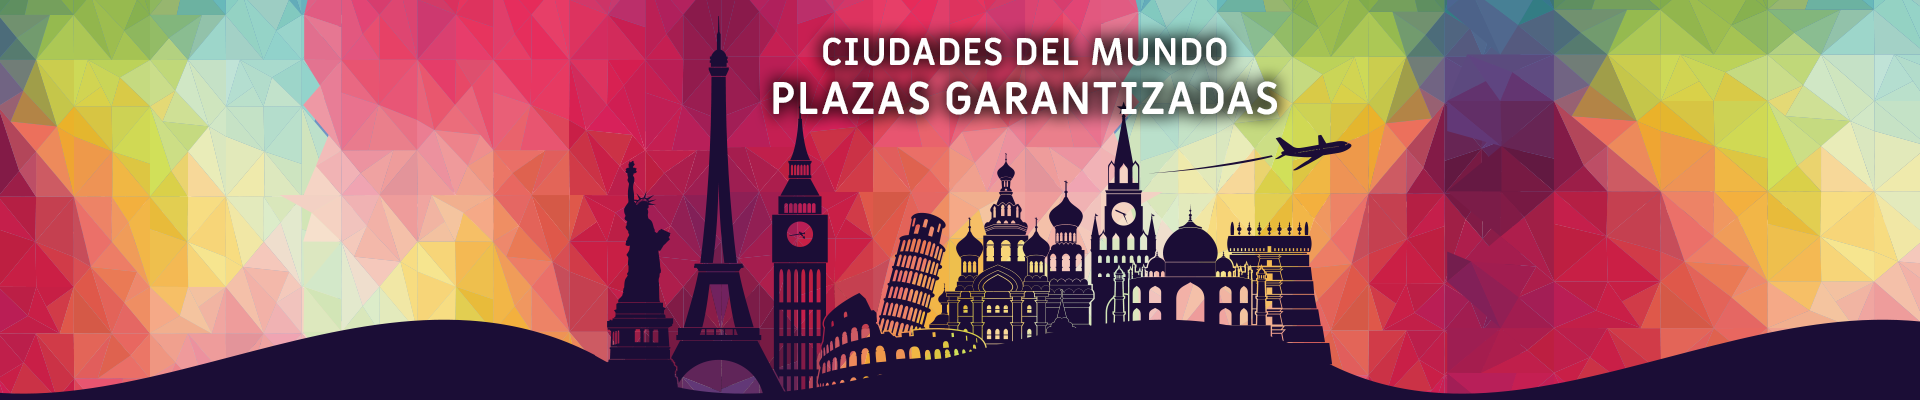 Plazas Garantizadas - Ciudades del Mundo HP